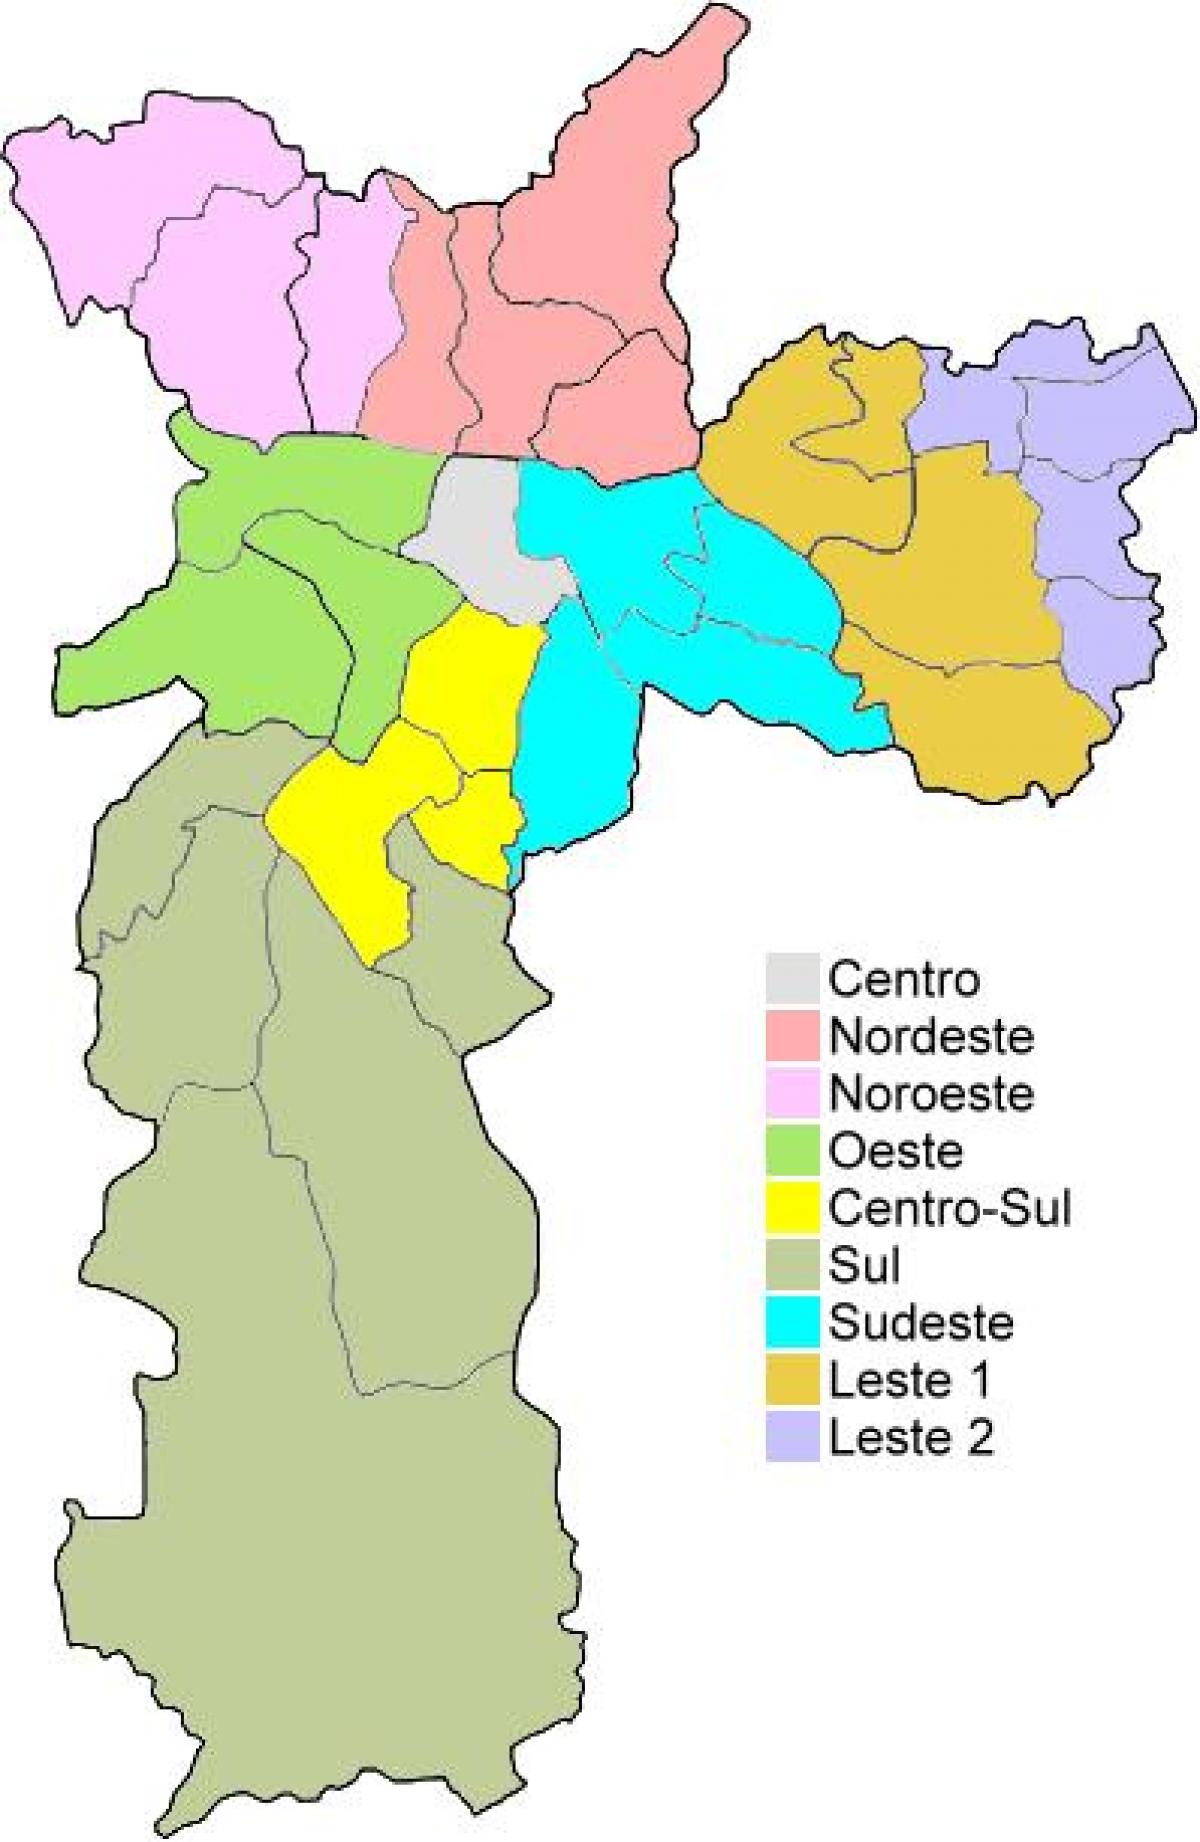 Kat jeyografik ki nan rejyon administratif nan São Paulo